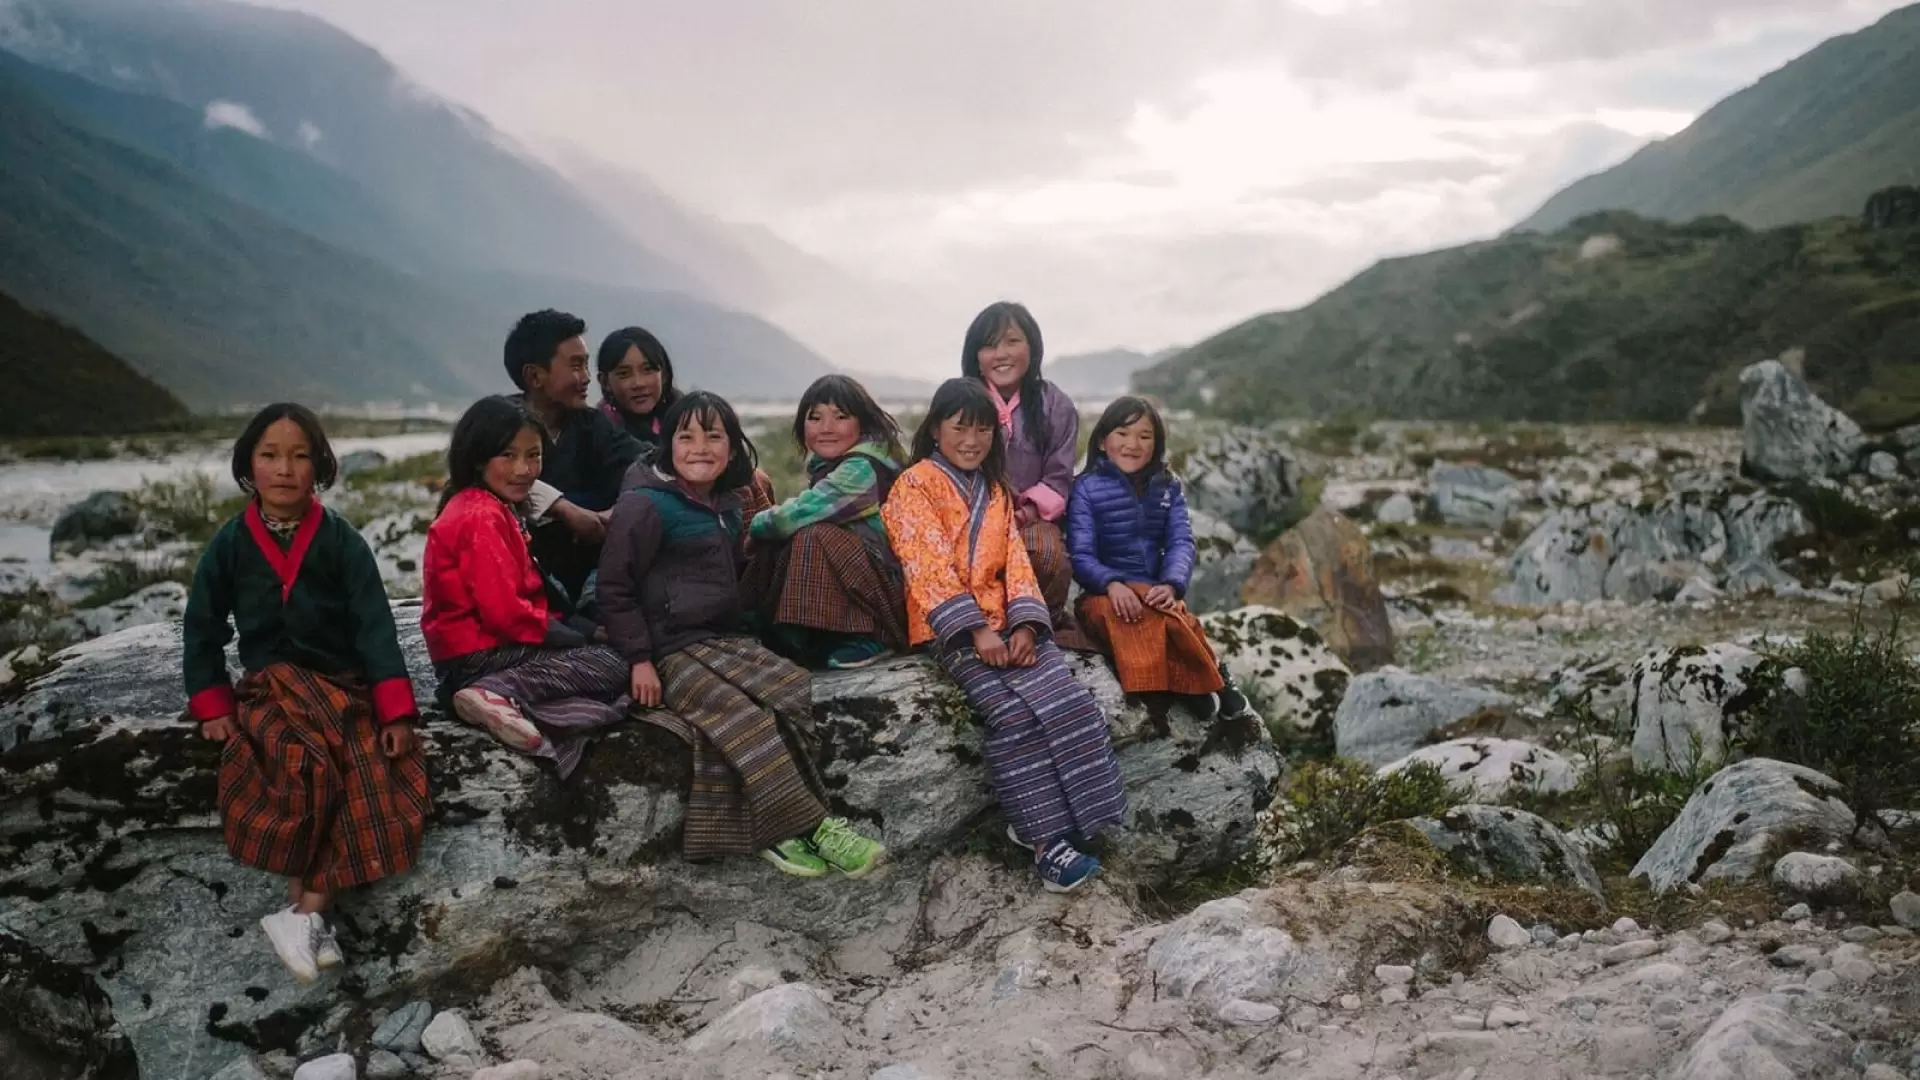 دانلود فیلم Lunana: A Yak in the Classroom 2019 با زیرنویس فارسی و تماشای آنلاین